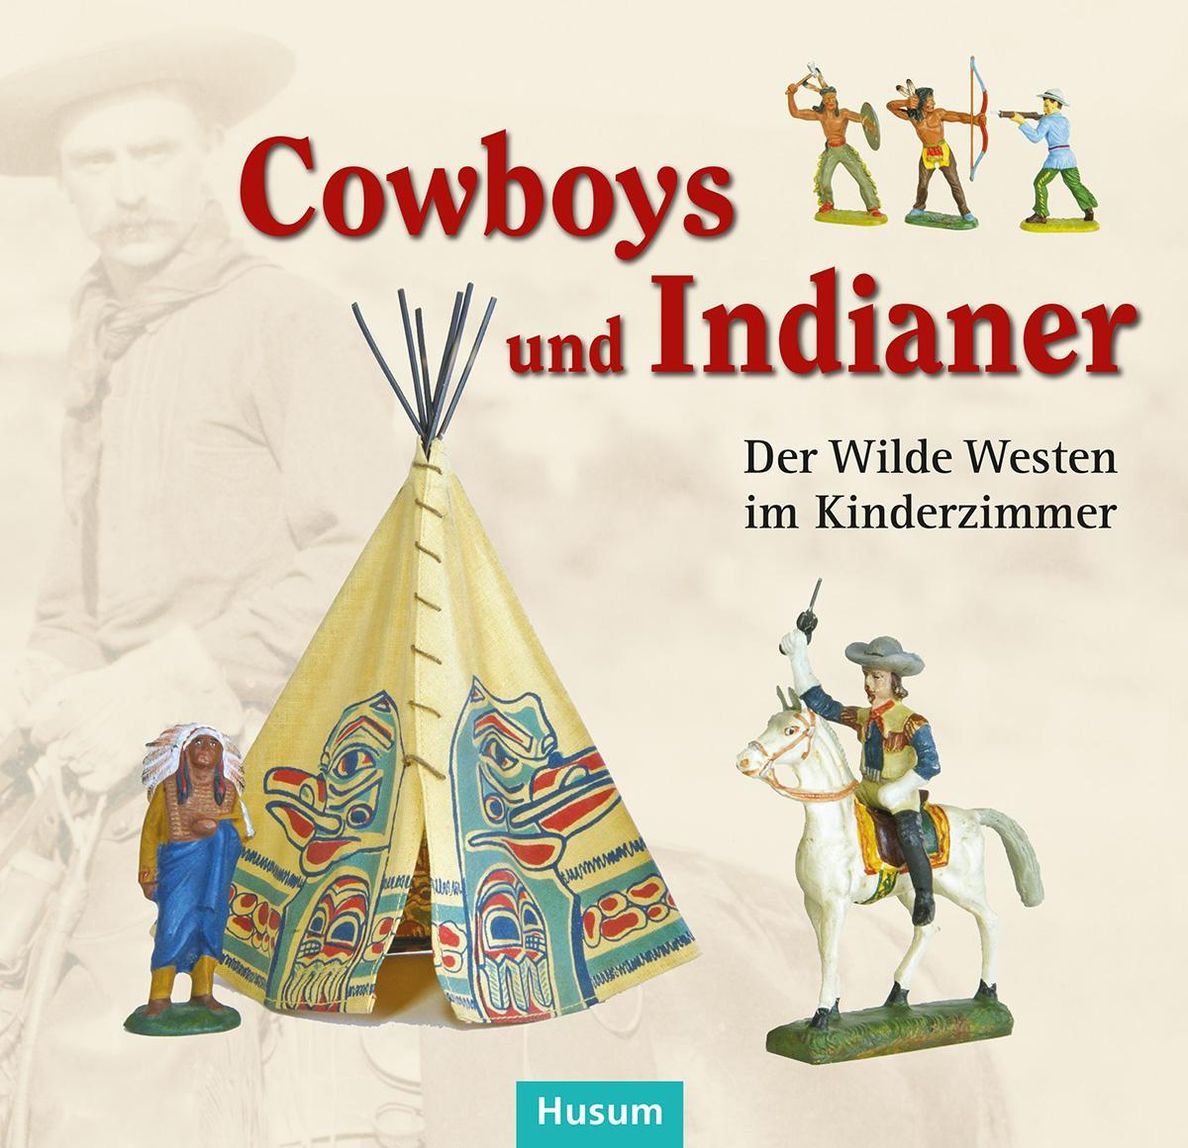 Cowboys und Indianer Buch versandkostenfrei bei Weltbild.at bestellen